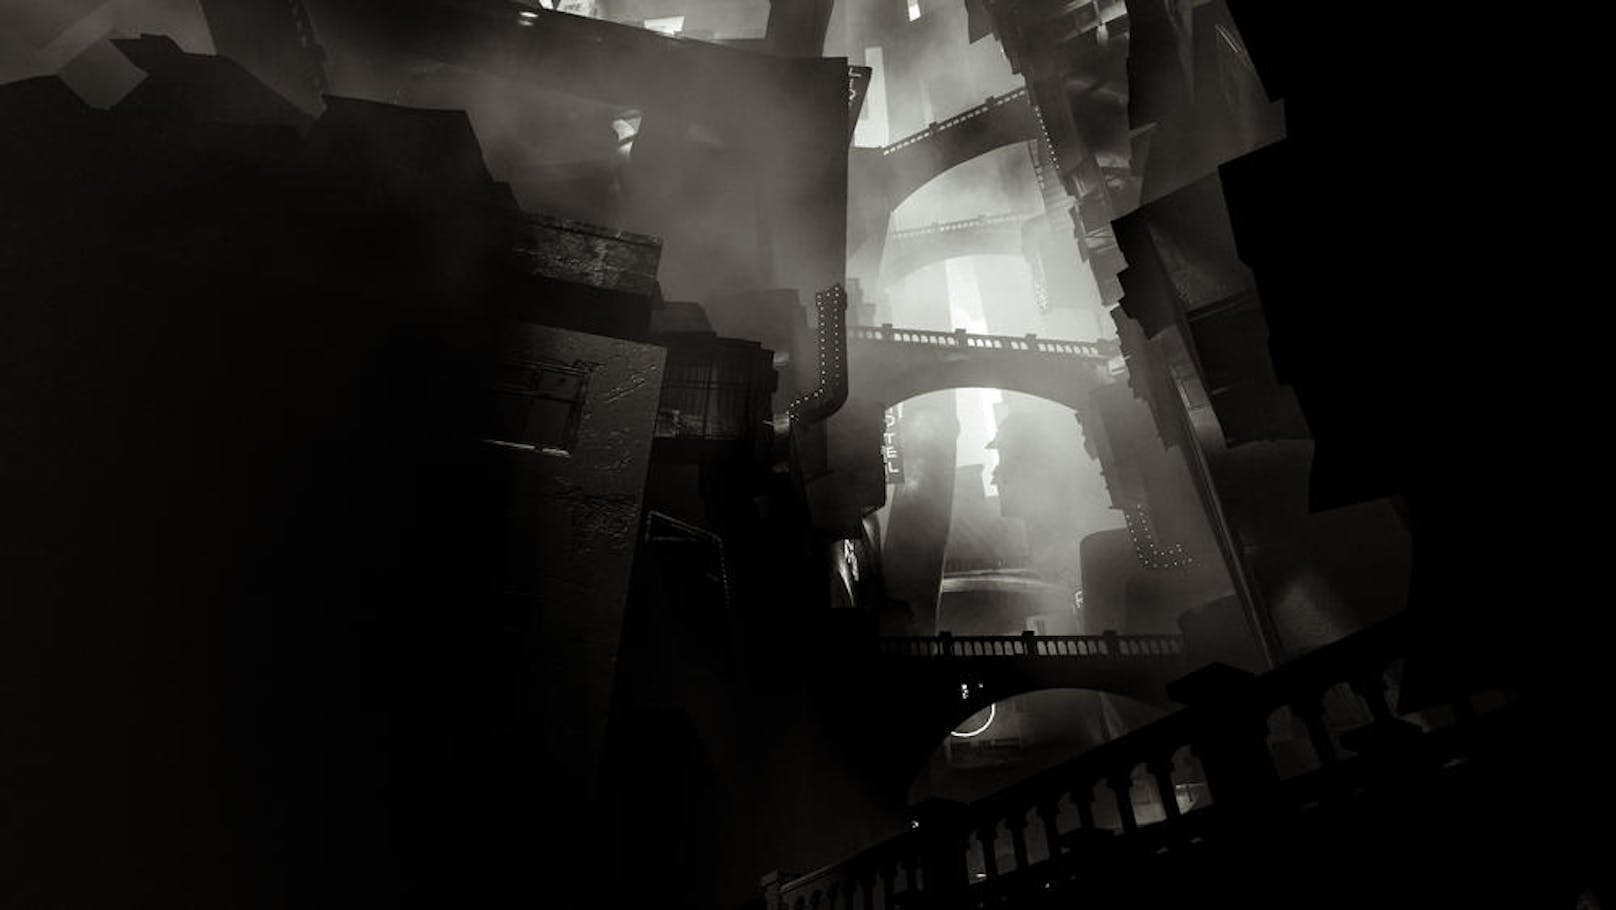 Unsicherheit begleitet den Spieler durch die verfallenen Gänge, die sich tiefer und tiefer zu einer seltsam-schrecklichen Stadt formen. "Wenn du tief genug kommst, vergisst die Stadt, dass sie eine Stadt ist", heißt es.